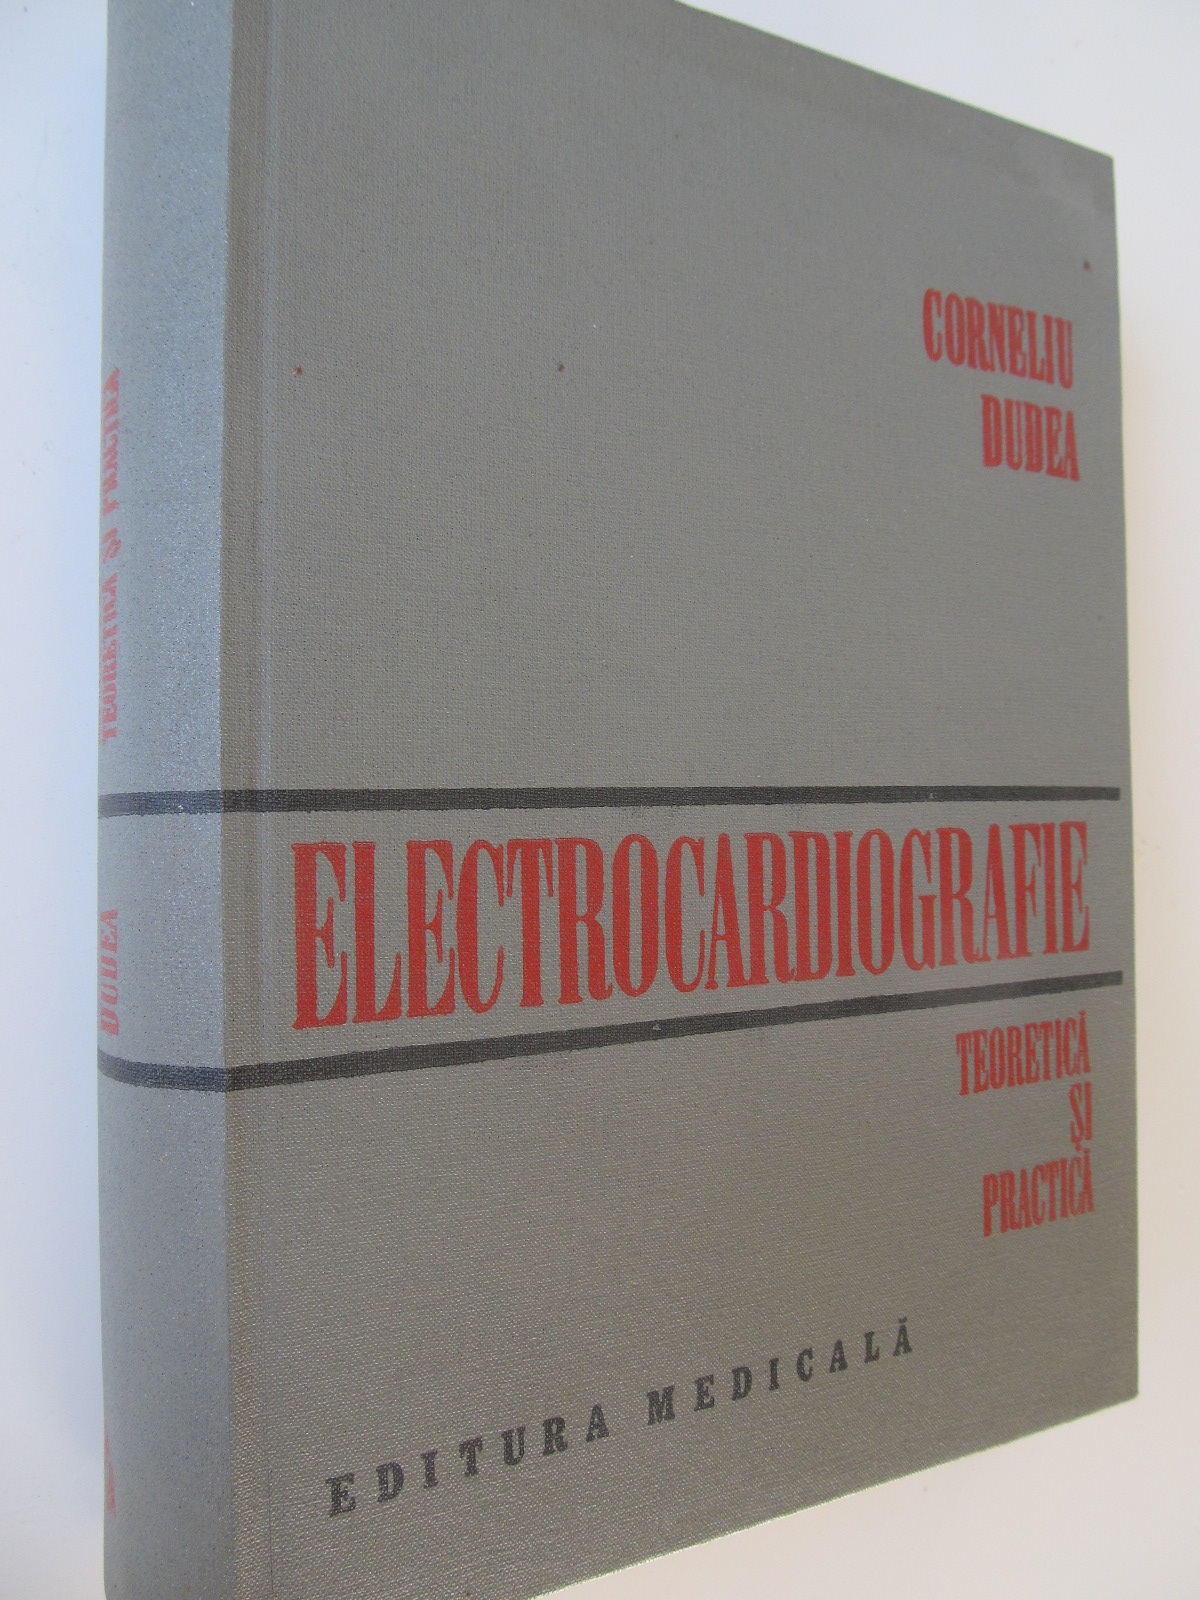 Electrocardiografie teoretica si practica - Corneliu Dudea | Detalii carte